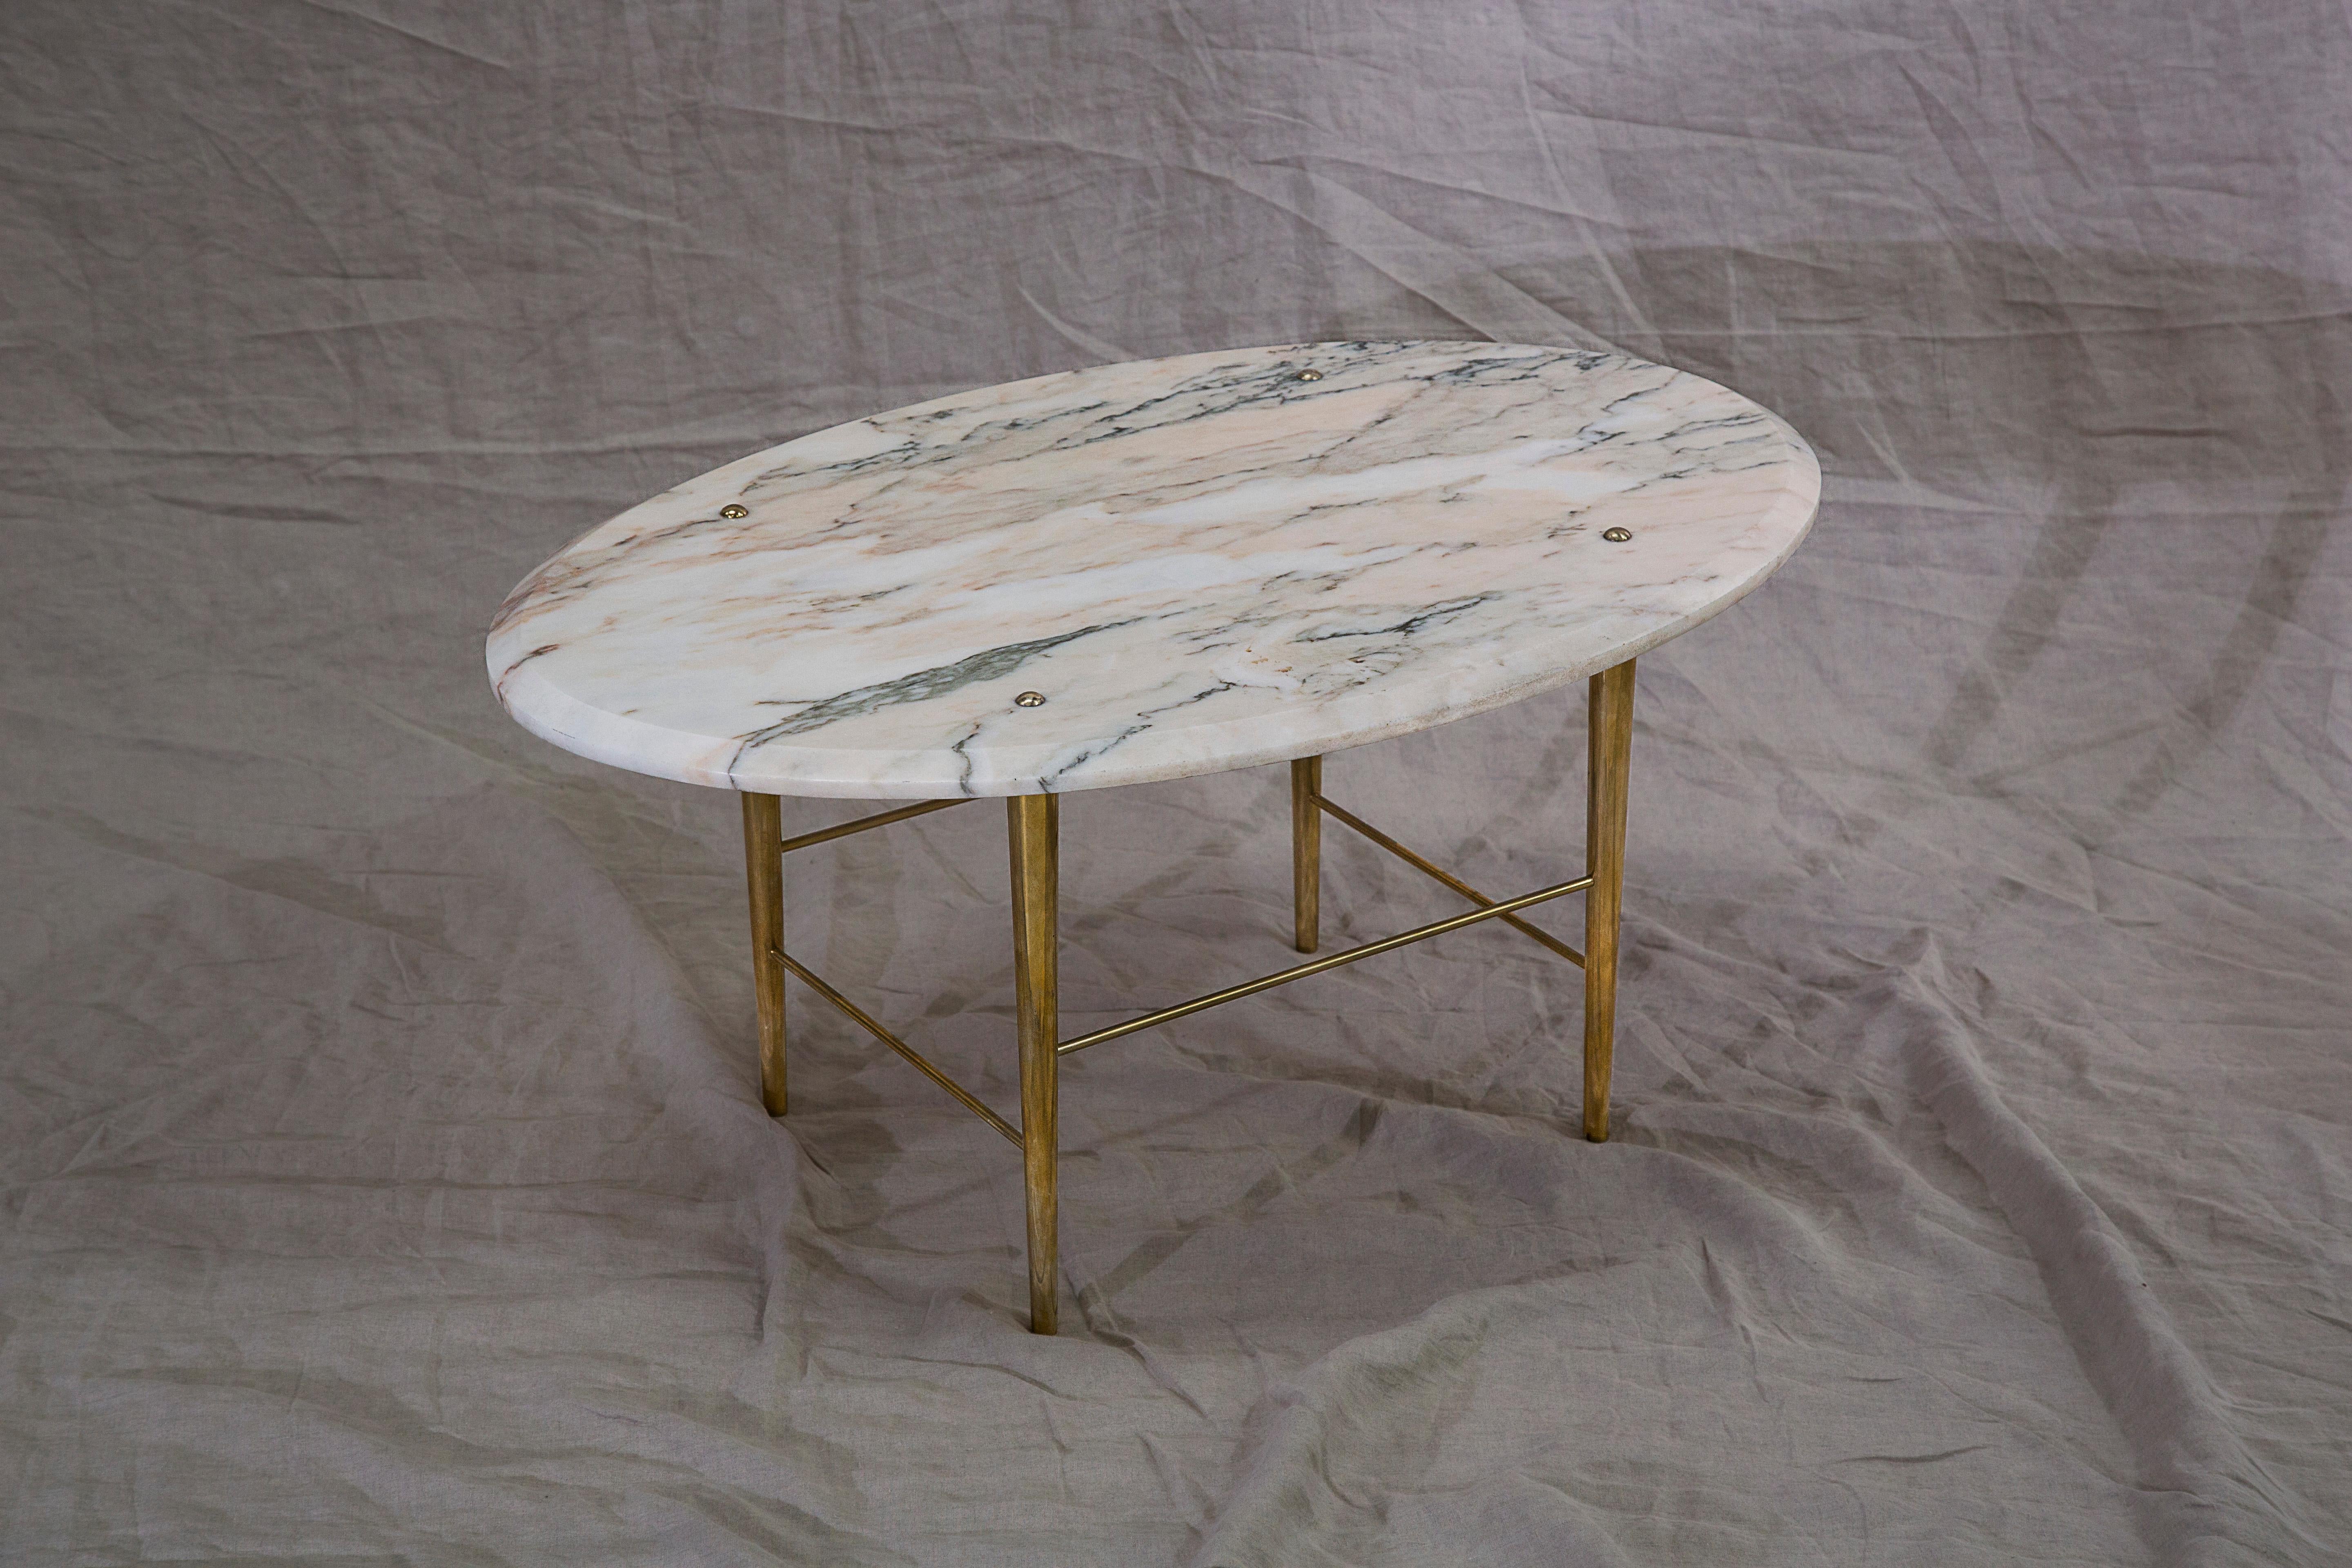 Una mesa de centro de mármol portugués y latón pulido. Hecho a mano por encargo en el norte de Inglaterra.

Medidas: 1000 mm (L) x 640 mm (A) x 400 mm (A)

Tamaños y acabados a medida.